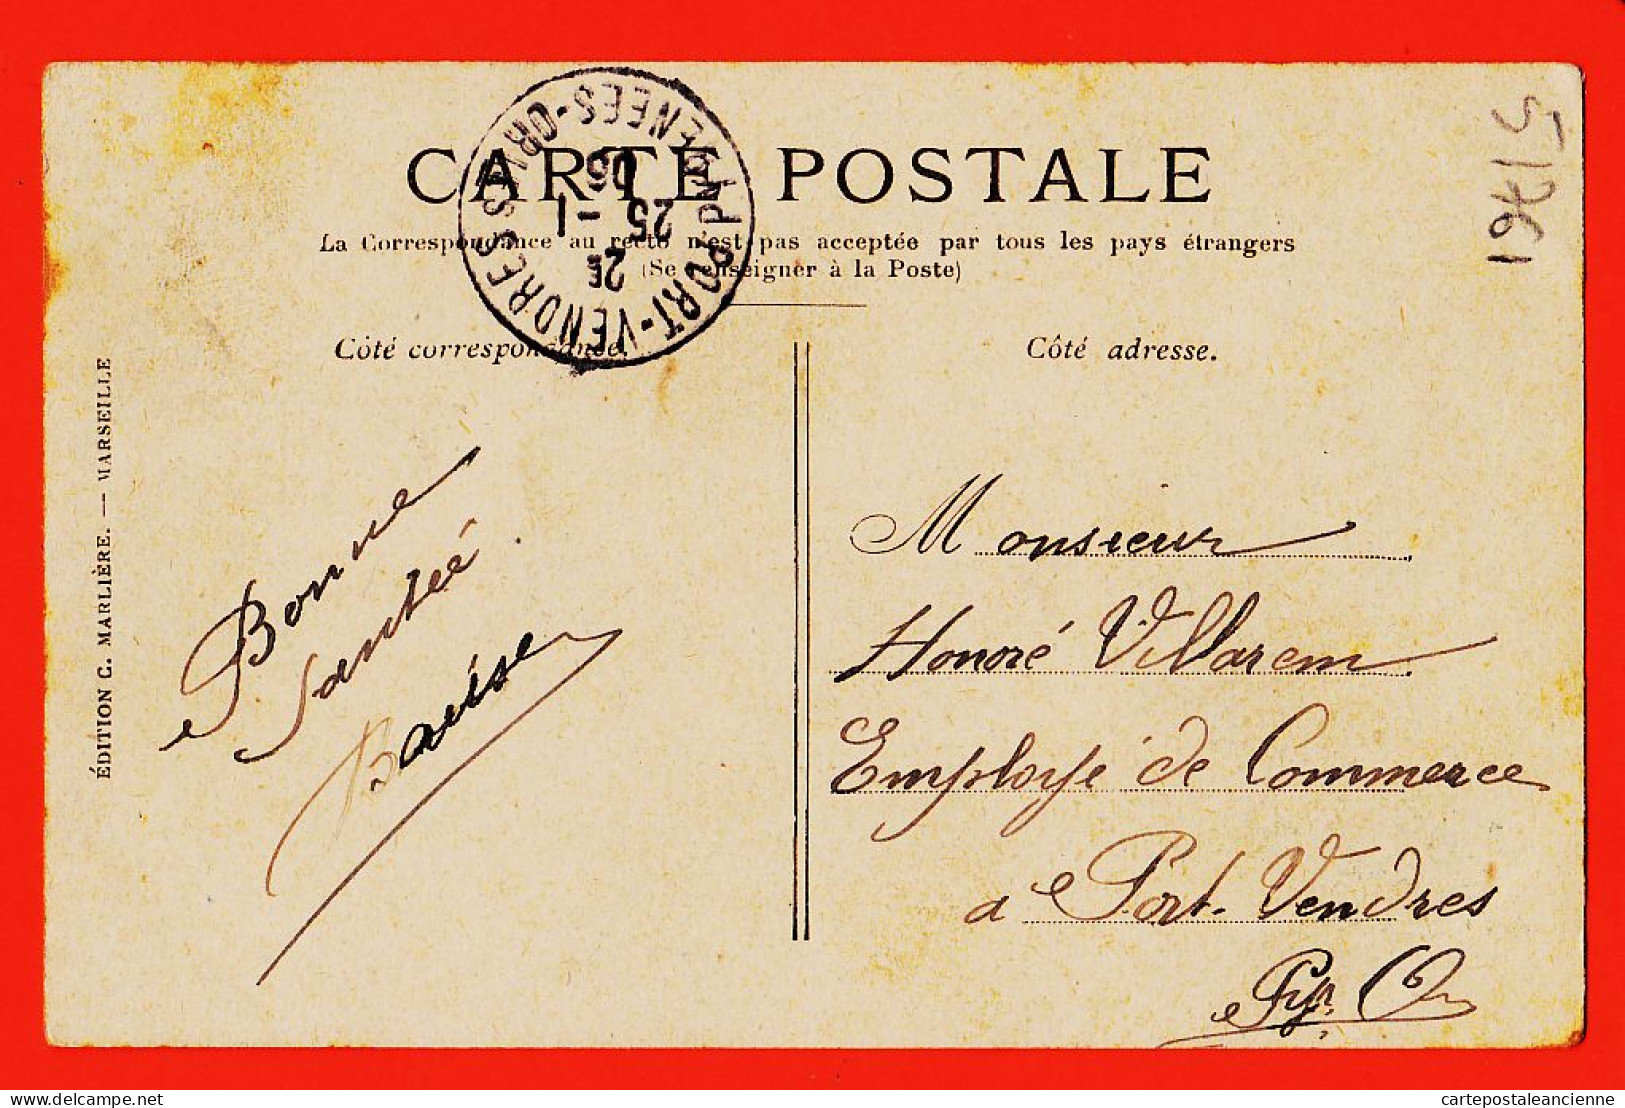 10761 ● MARSEILLE (13) Le Quai De La FRATERNITE  1905 à Honoré VILLAREM  Port-Vendres  MARLIERE N° 5 - Joliette, Zone Portuaire